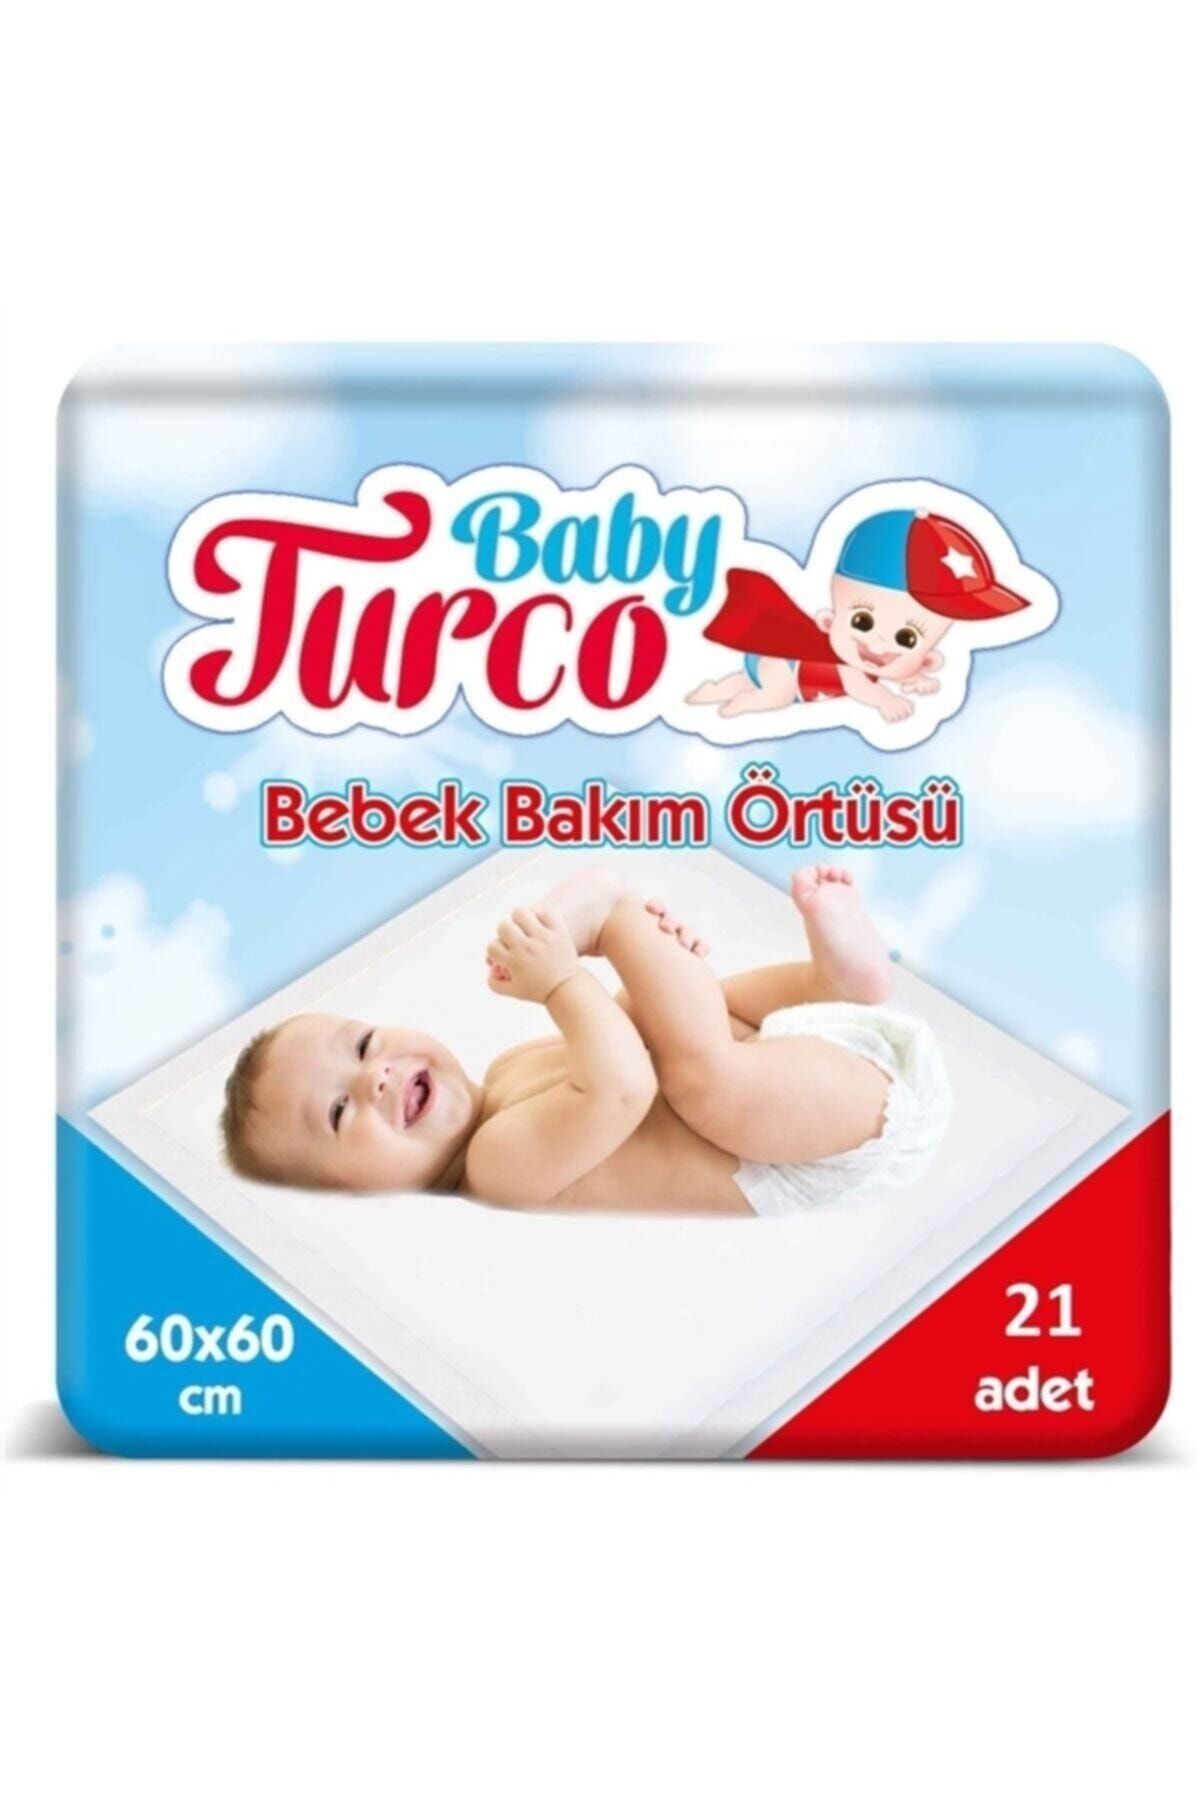 Baby Turco Bebek Bakım Örtüsü 60x60 Cm 21 Adet Bebek Bakım Örtüsü 60x60 Cm 21 Adet